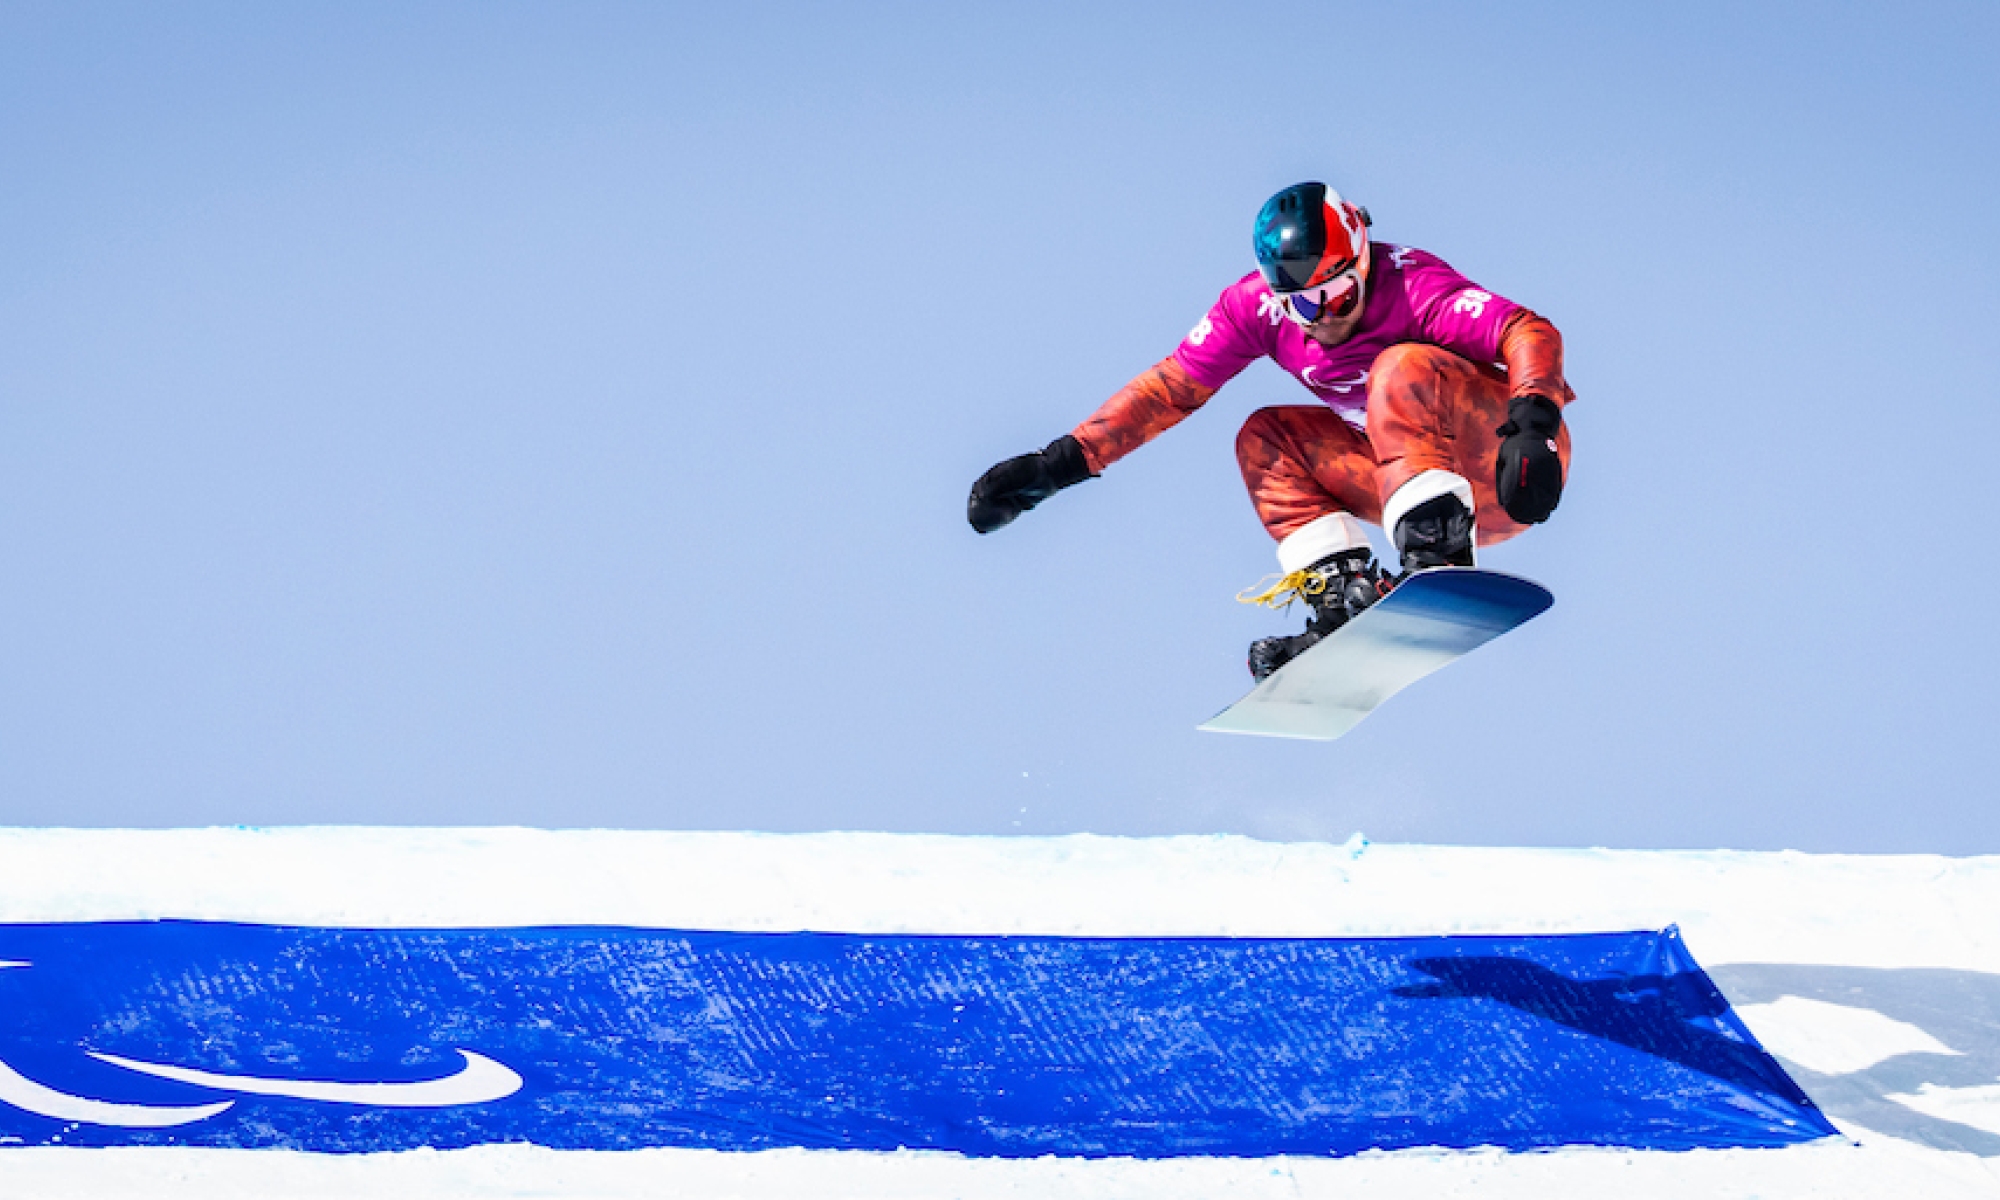 Alex Massie snowboarding in Beijing